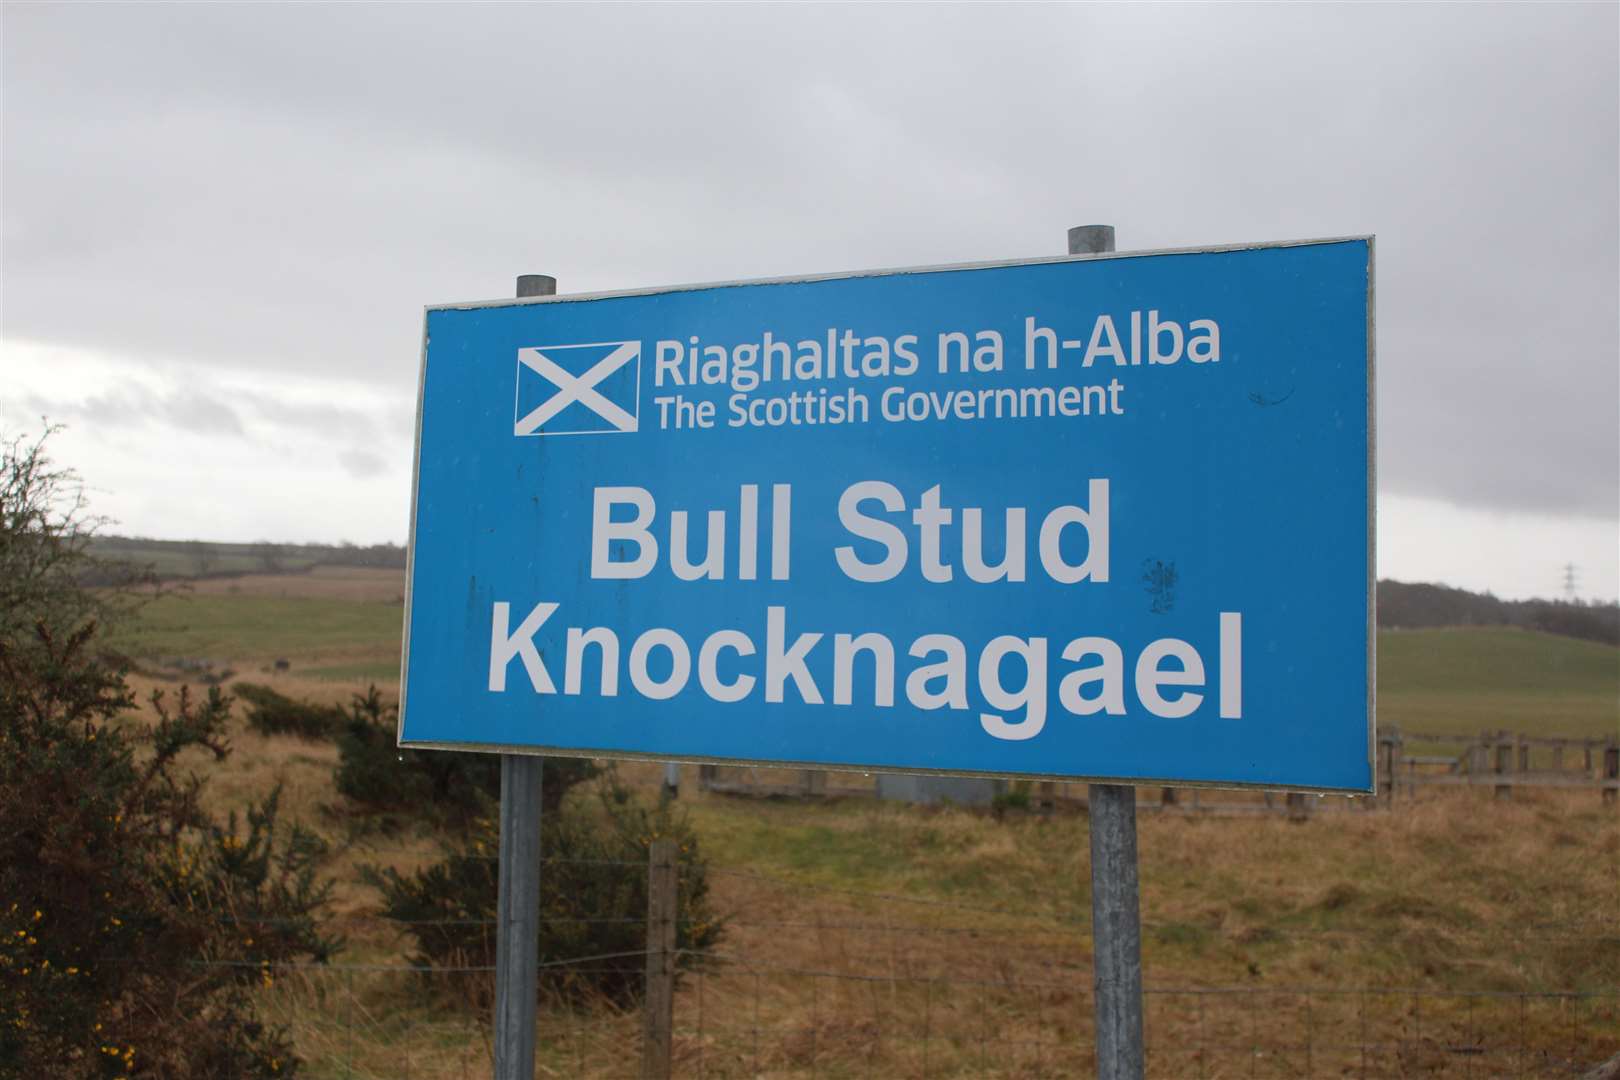 Knocknagael Bull Stud Farm in Inverness..